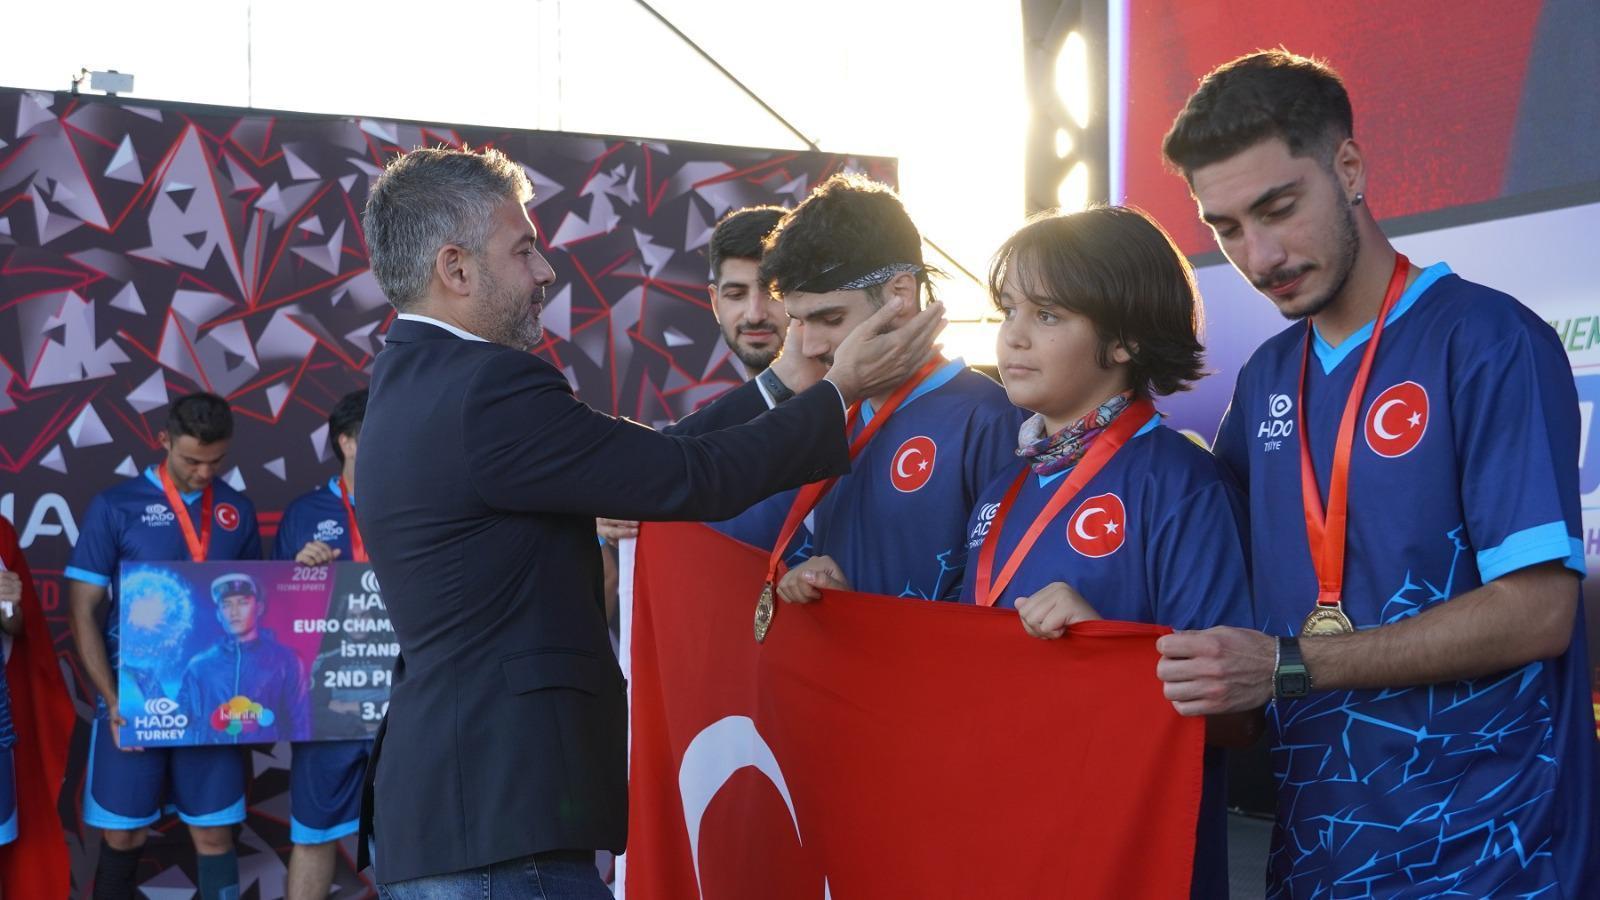 Türkiye, HADO Avrupa Şampiyonu oldu